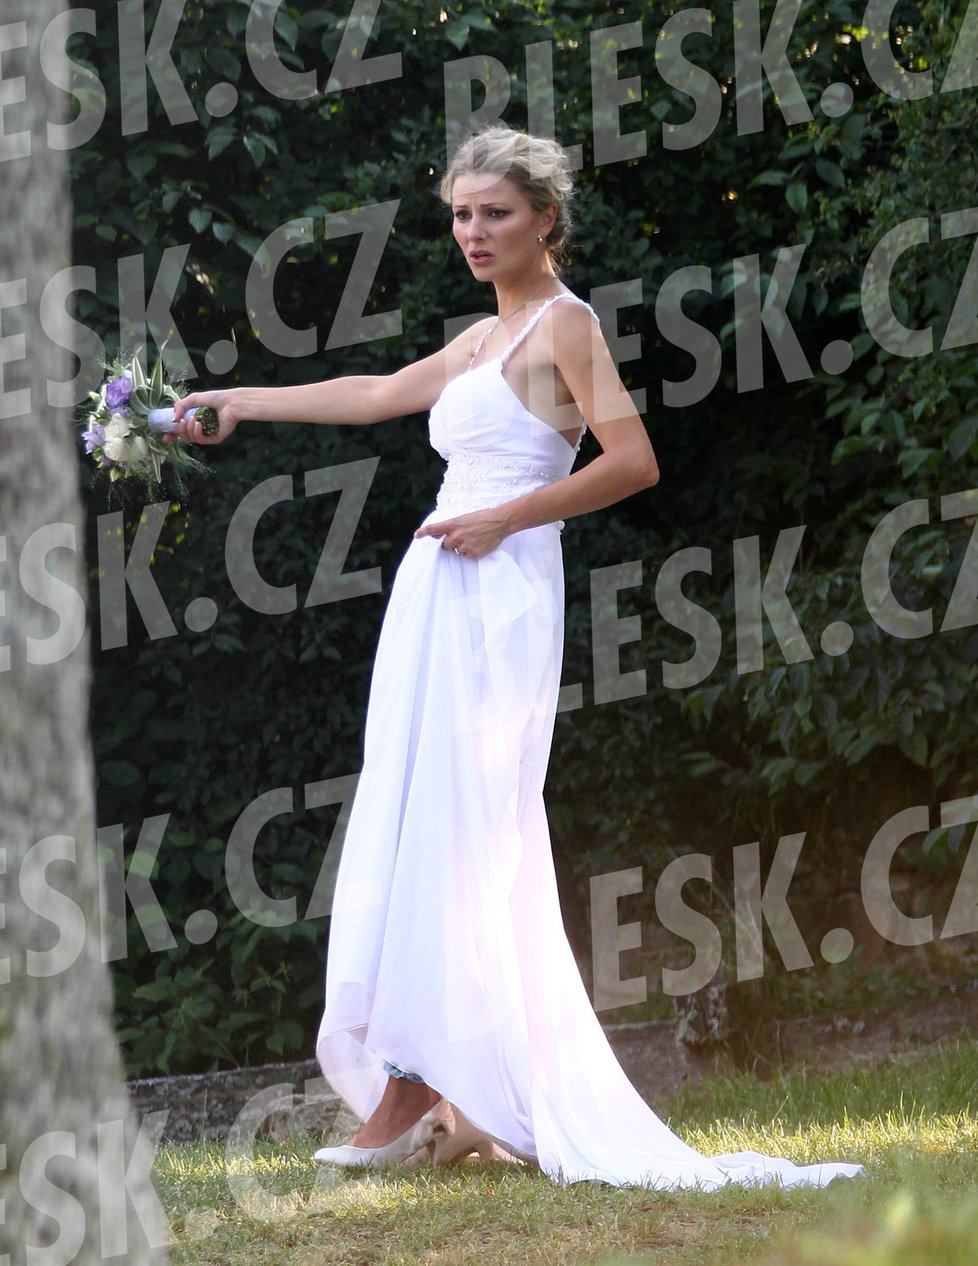 Sexbomba Kocurová měla na sobě jednoduché bílé šaty, ve kterých vypadala krásně.